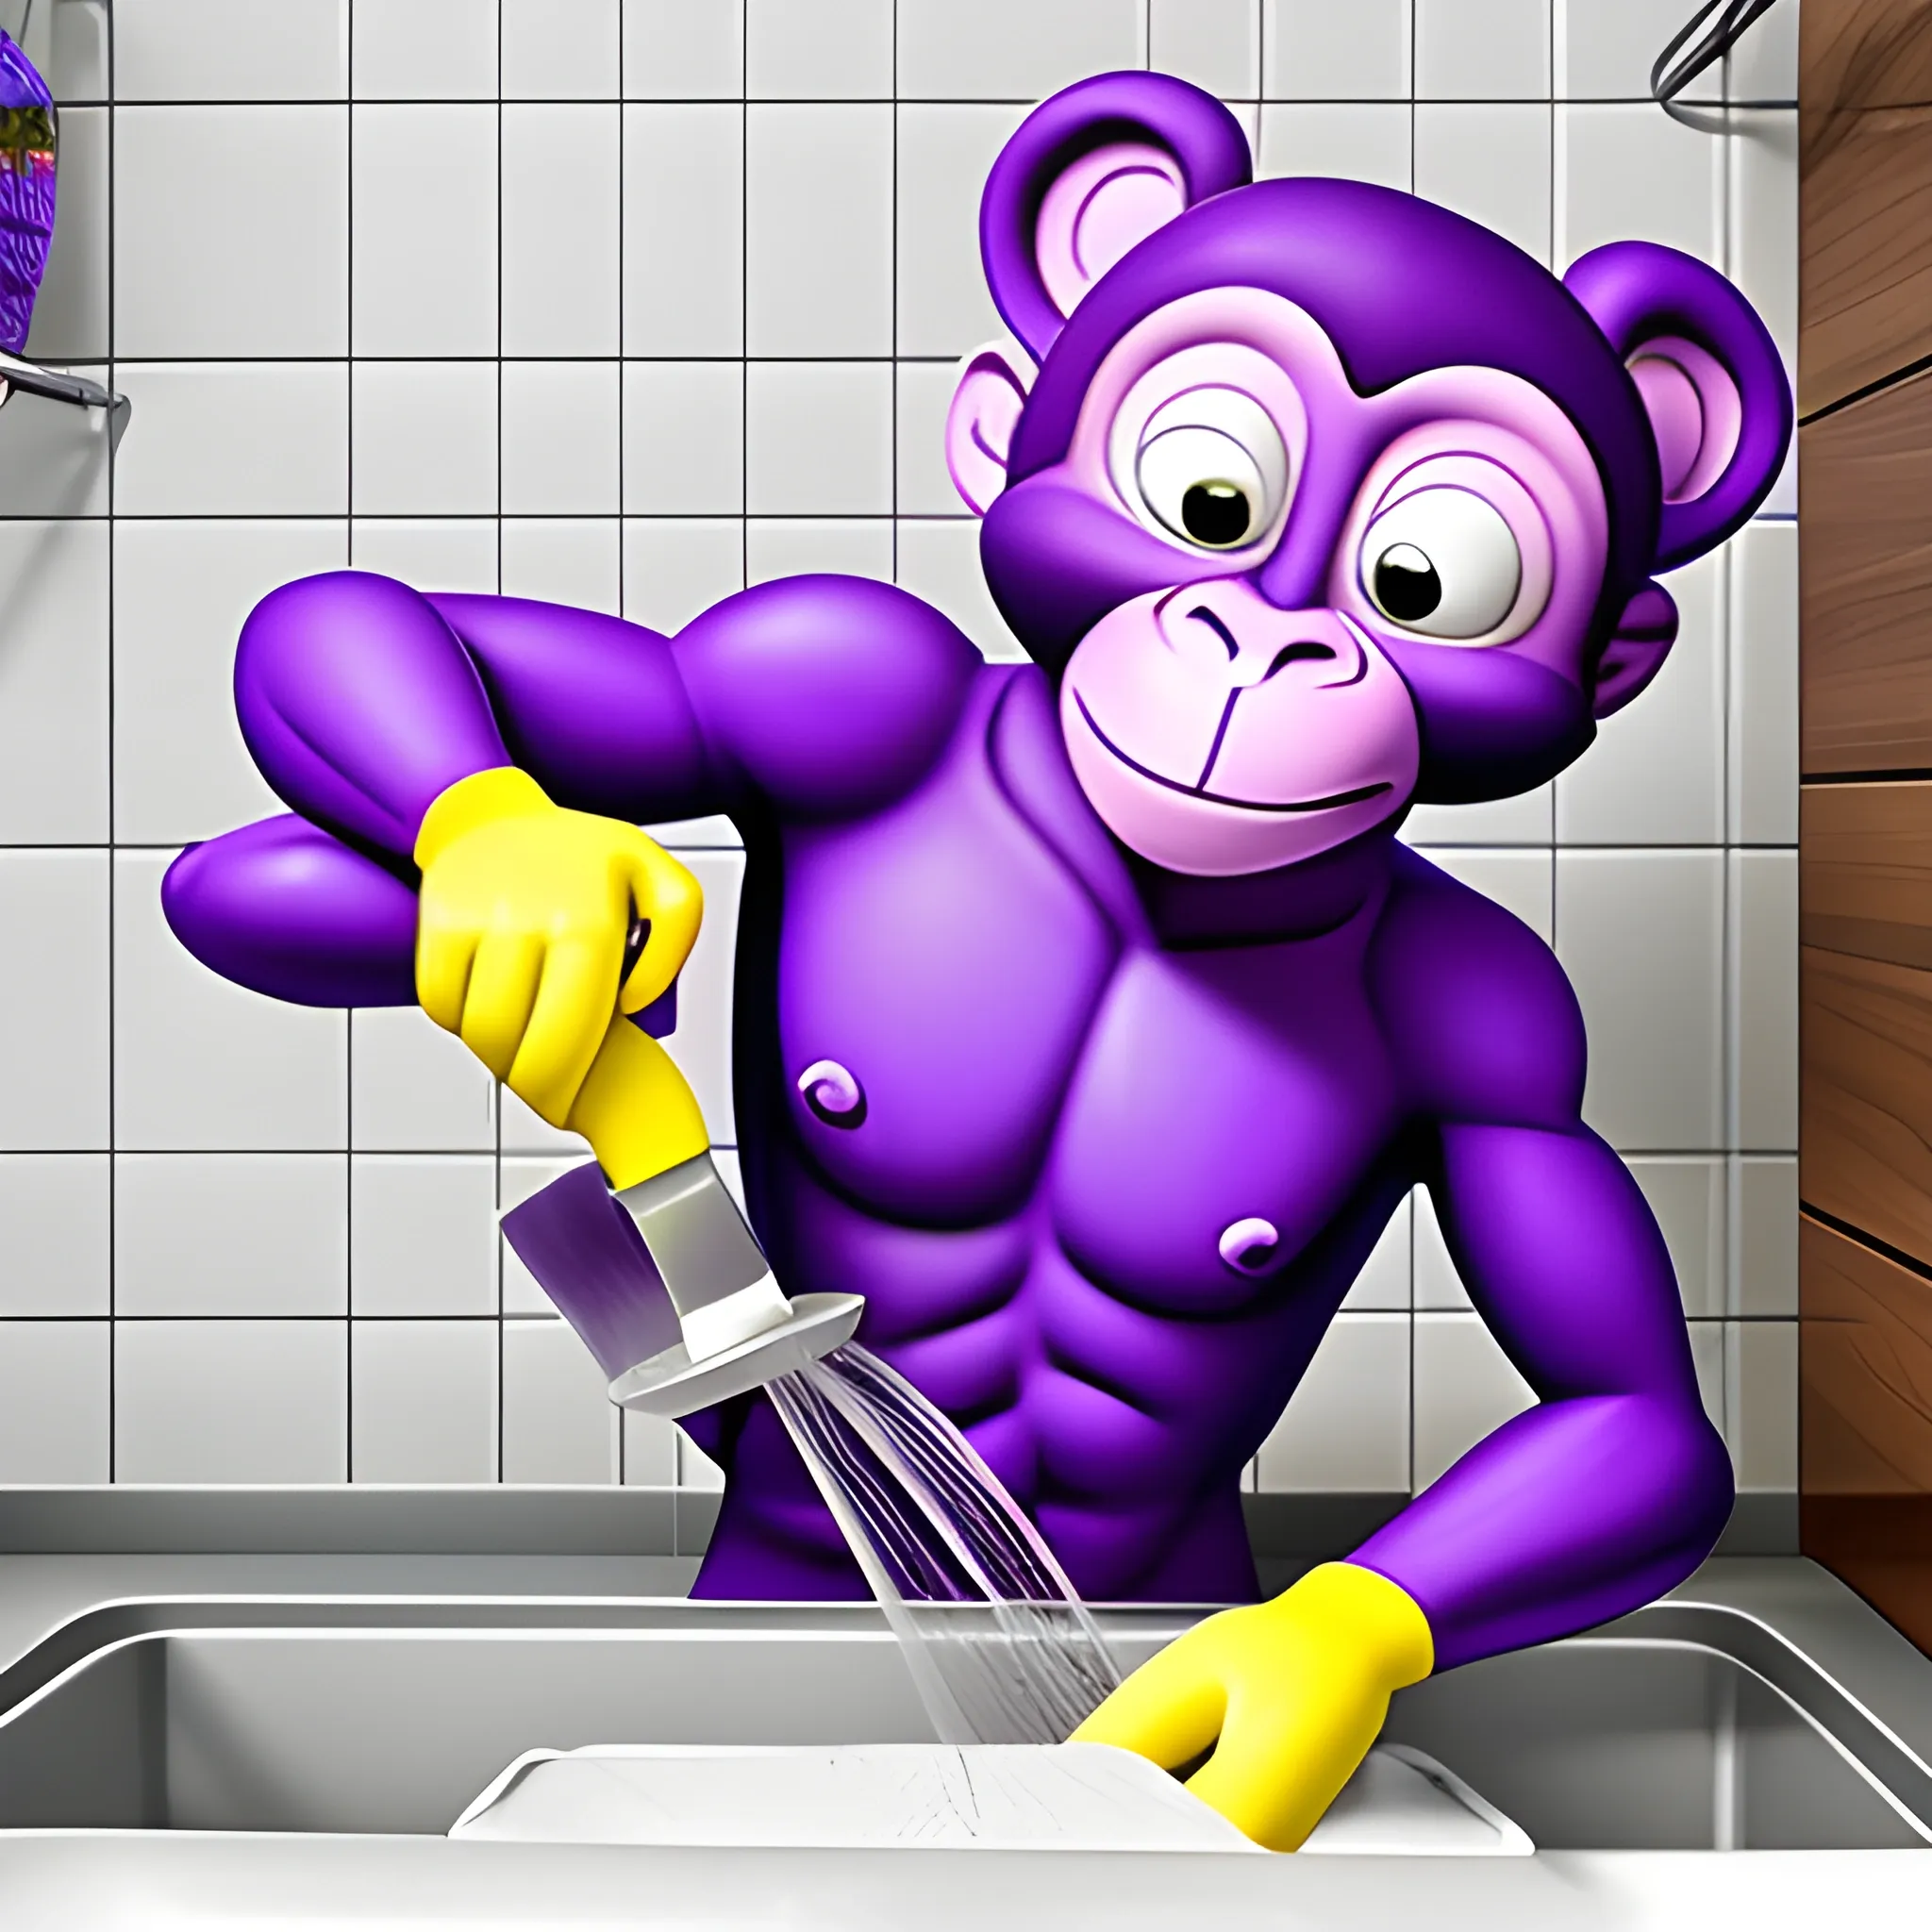 Purple Monkey washing dishes.